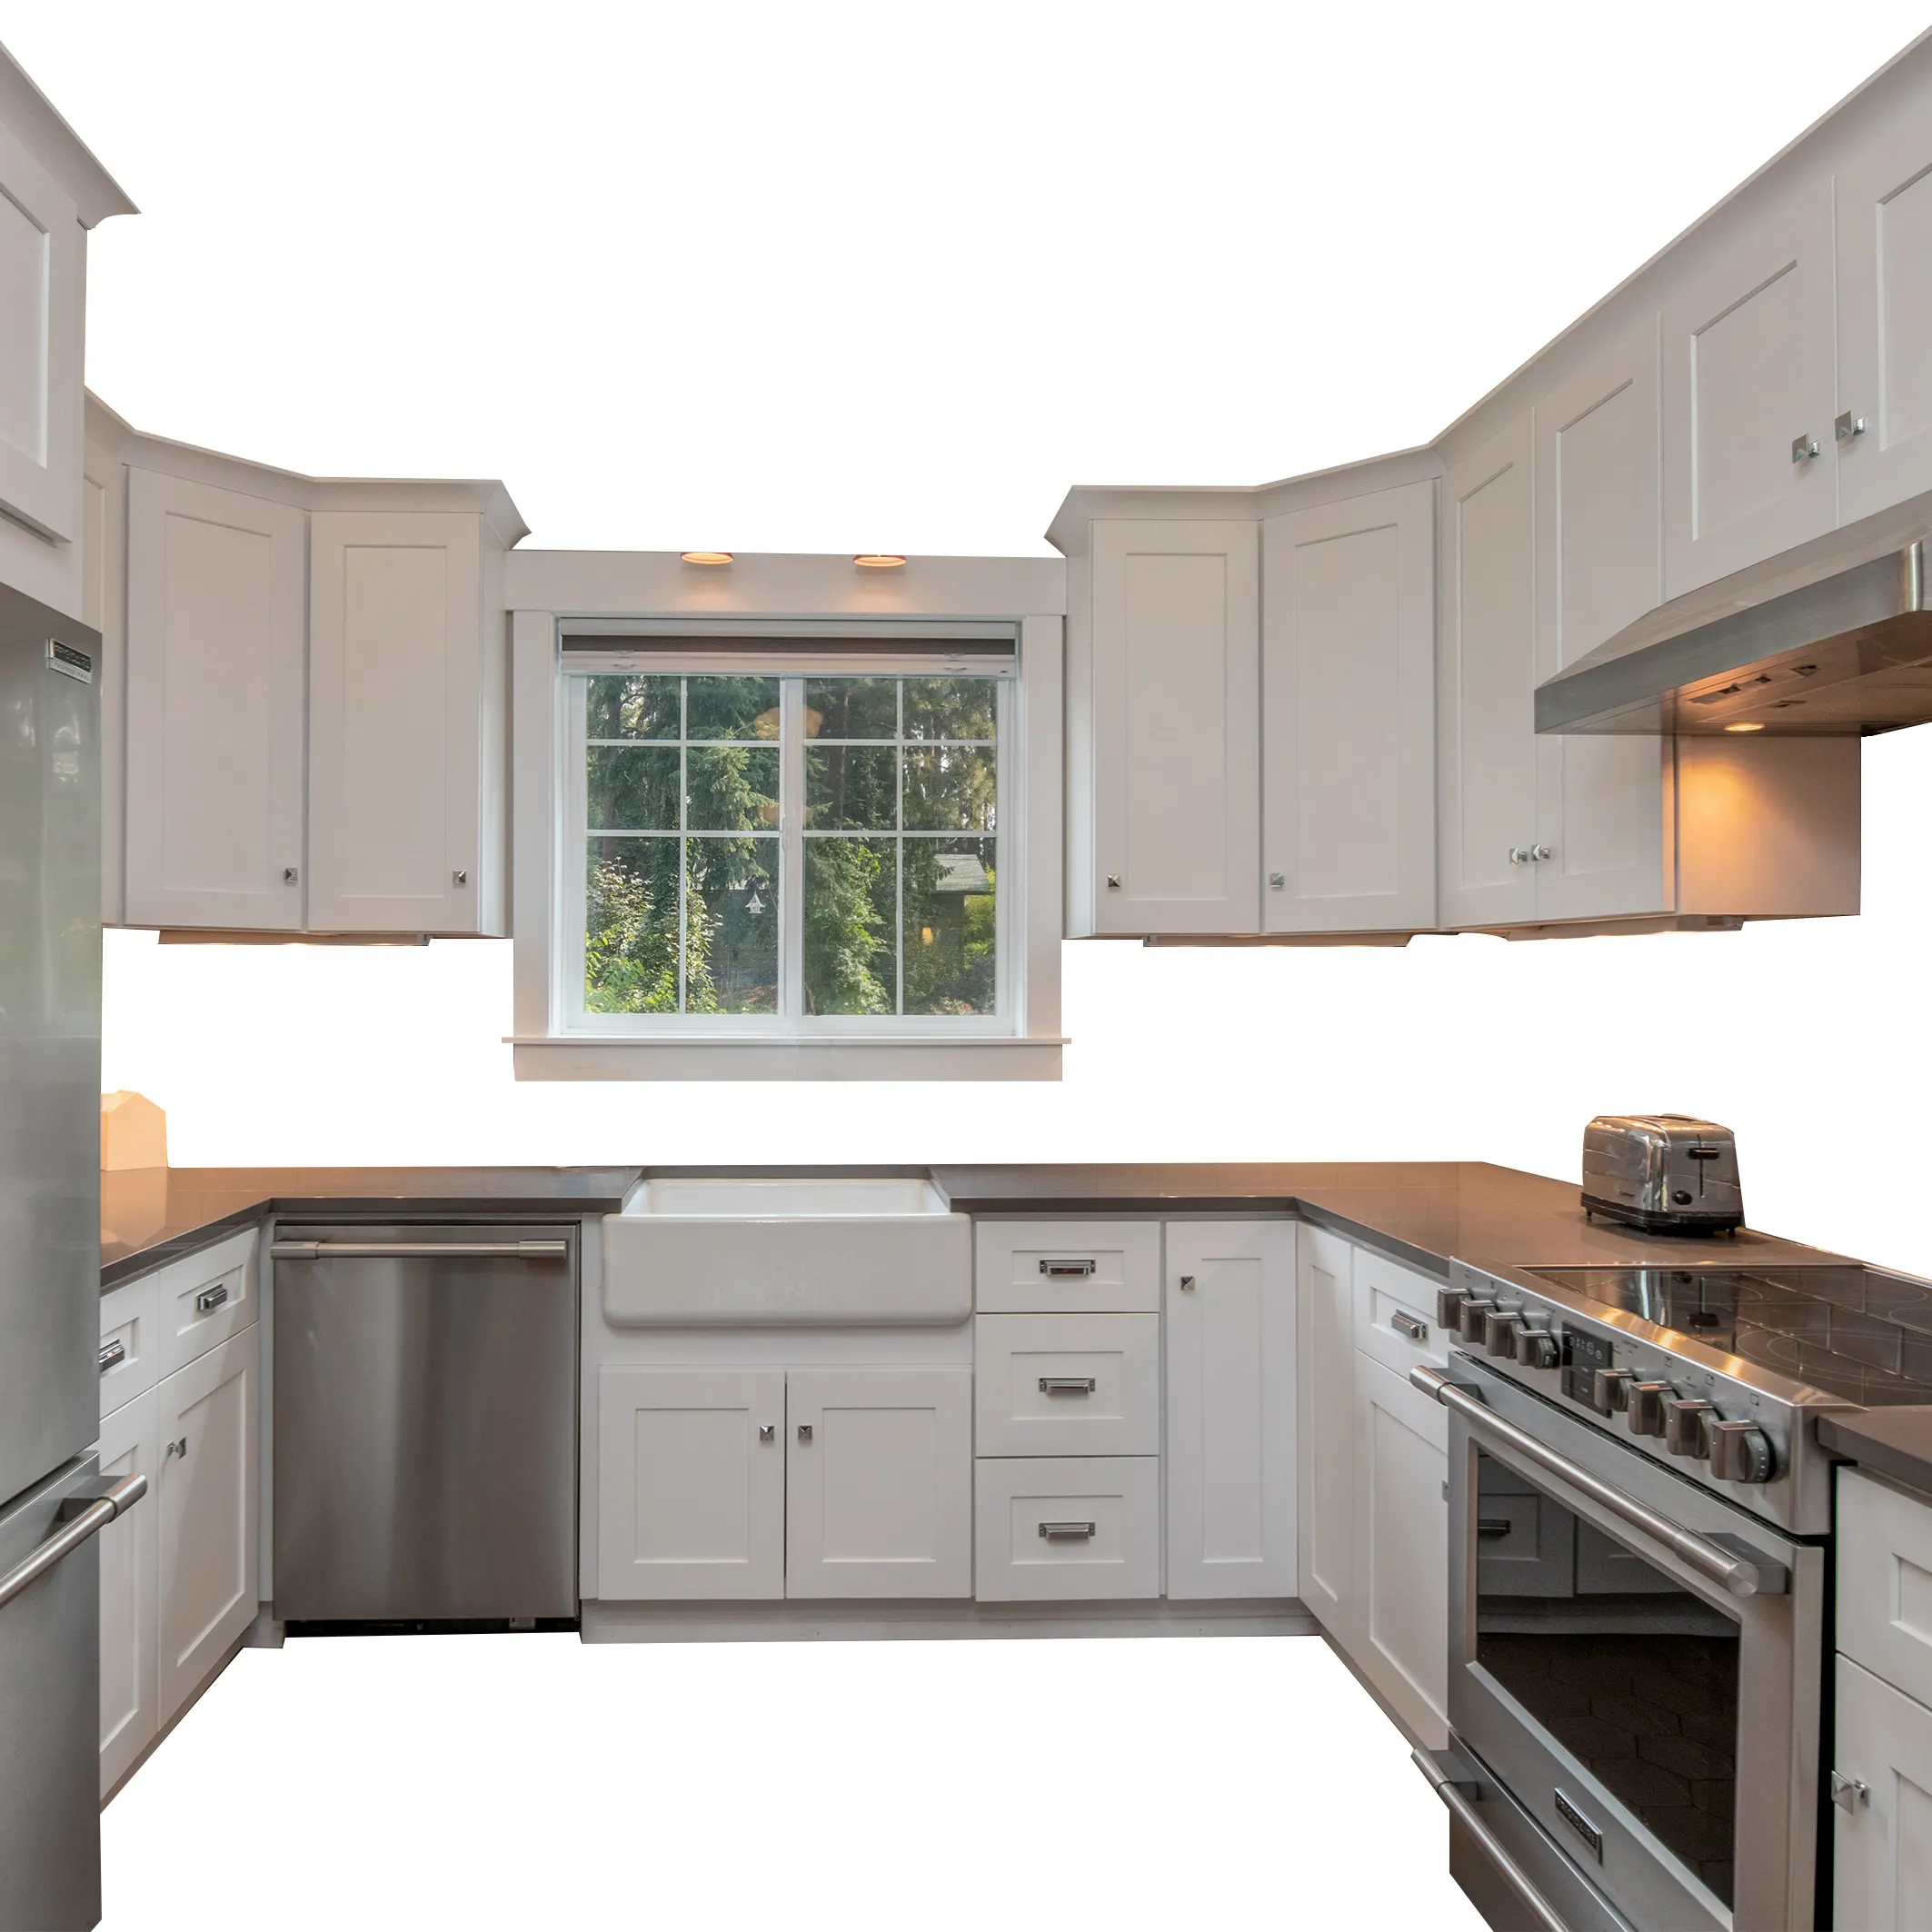 Europa moderna combinação habitação U estilo marfim branco madeira maciça cozinha armários fábrica design alta qualidade cozinha armários